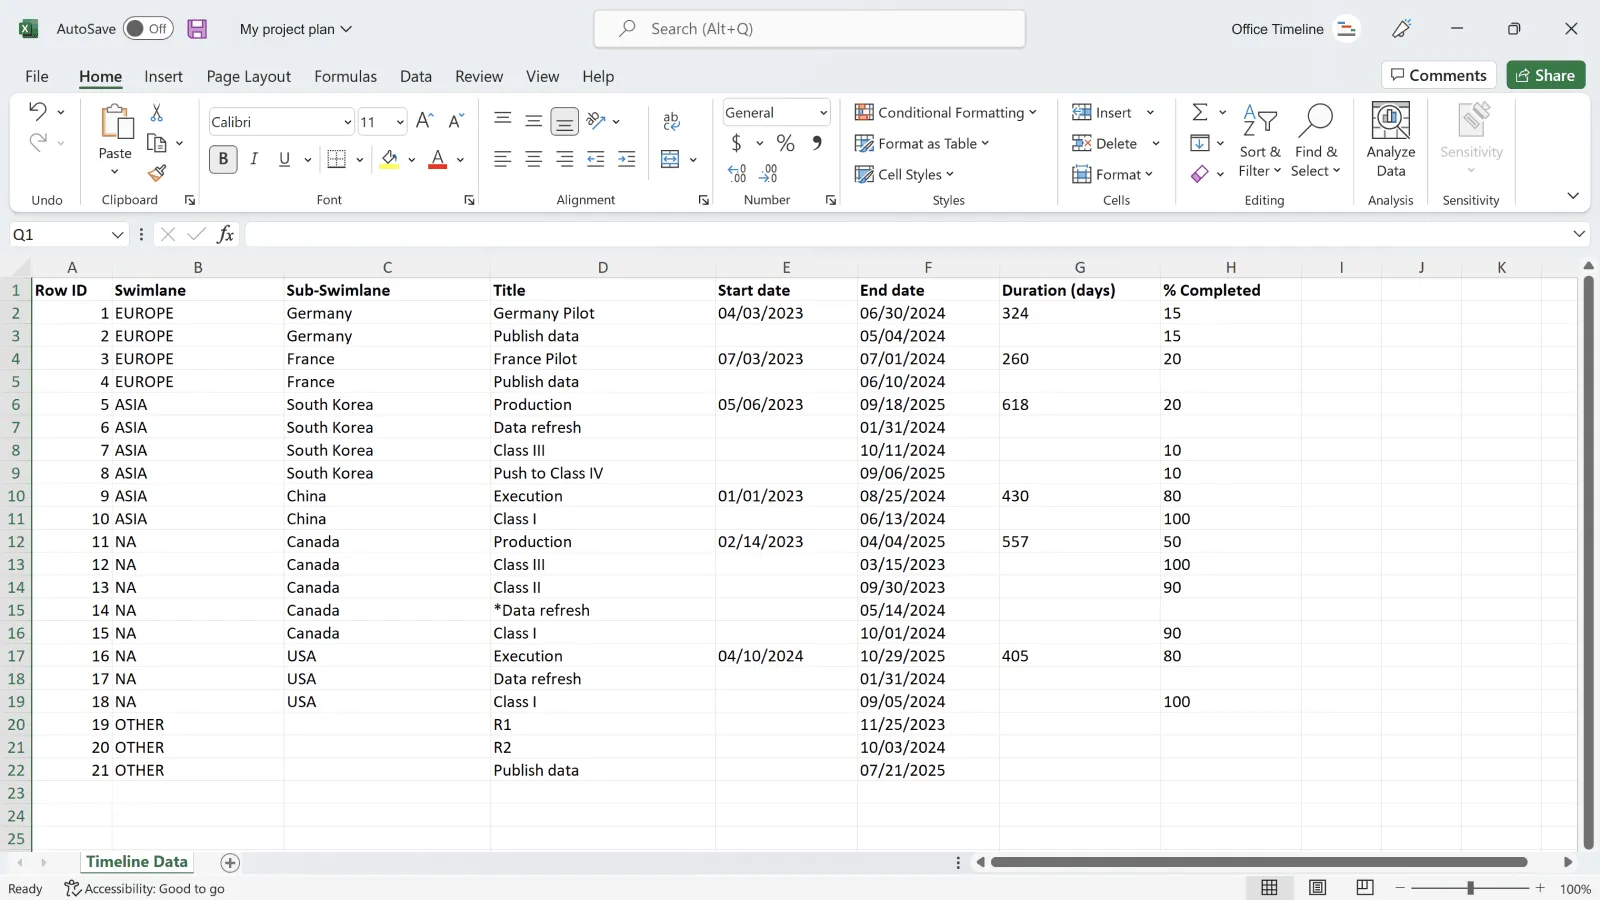 Données de projet dans Excel avant d'être importées dans Office Timeline Pro+